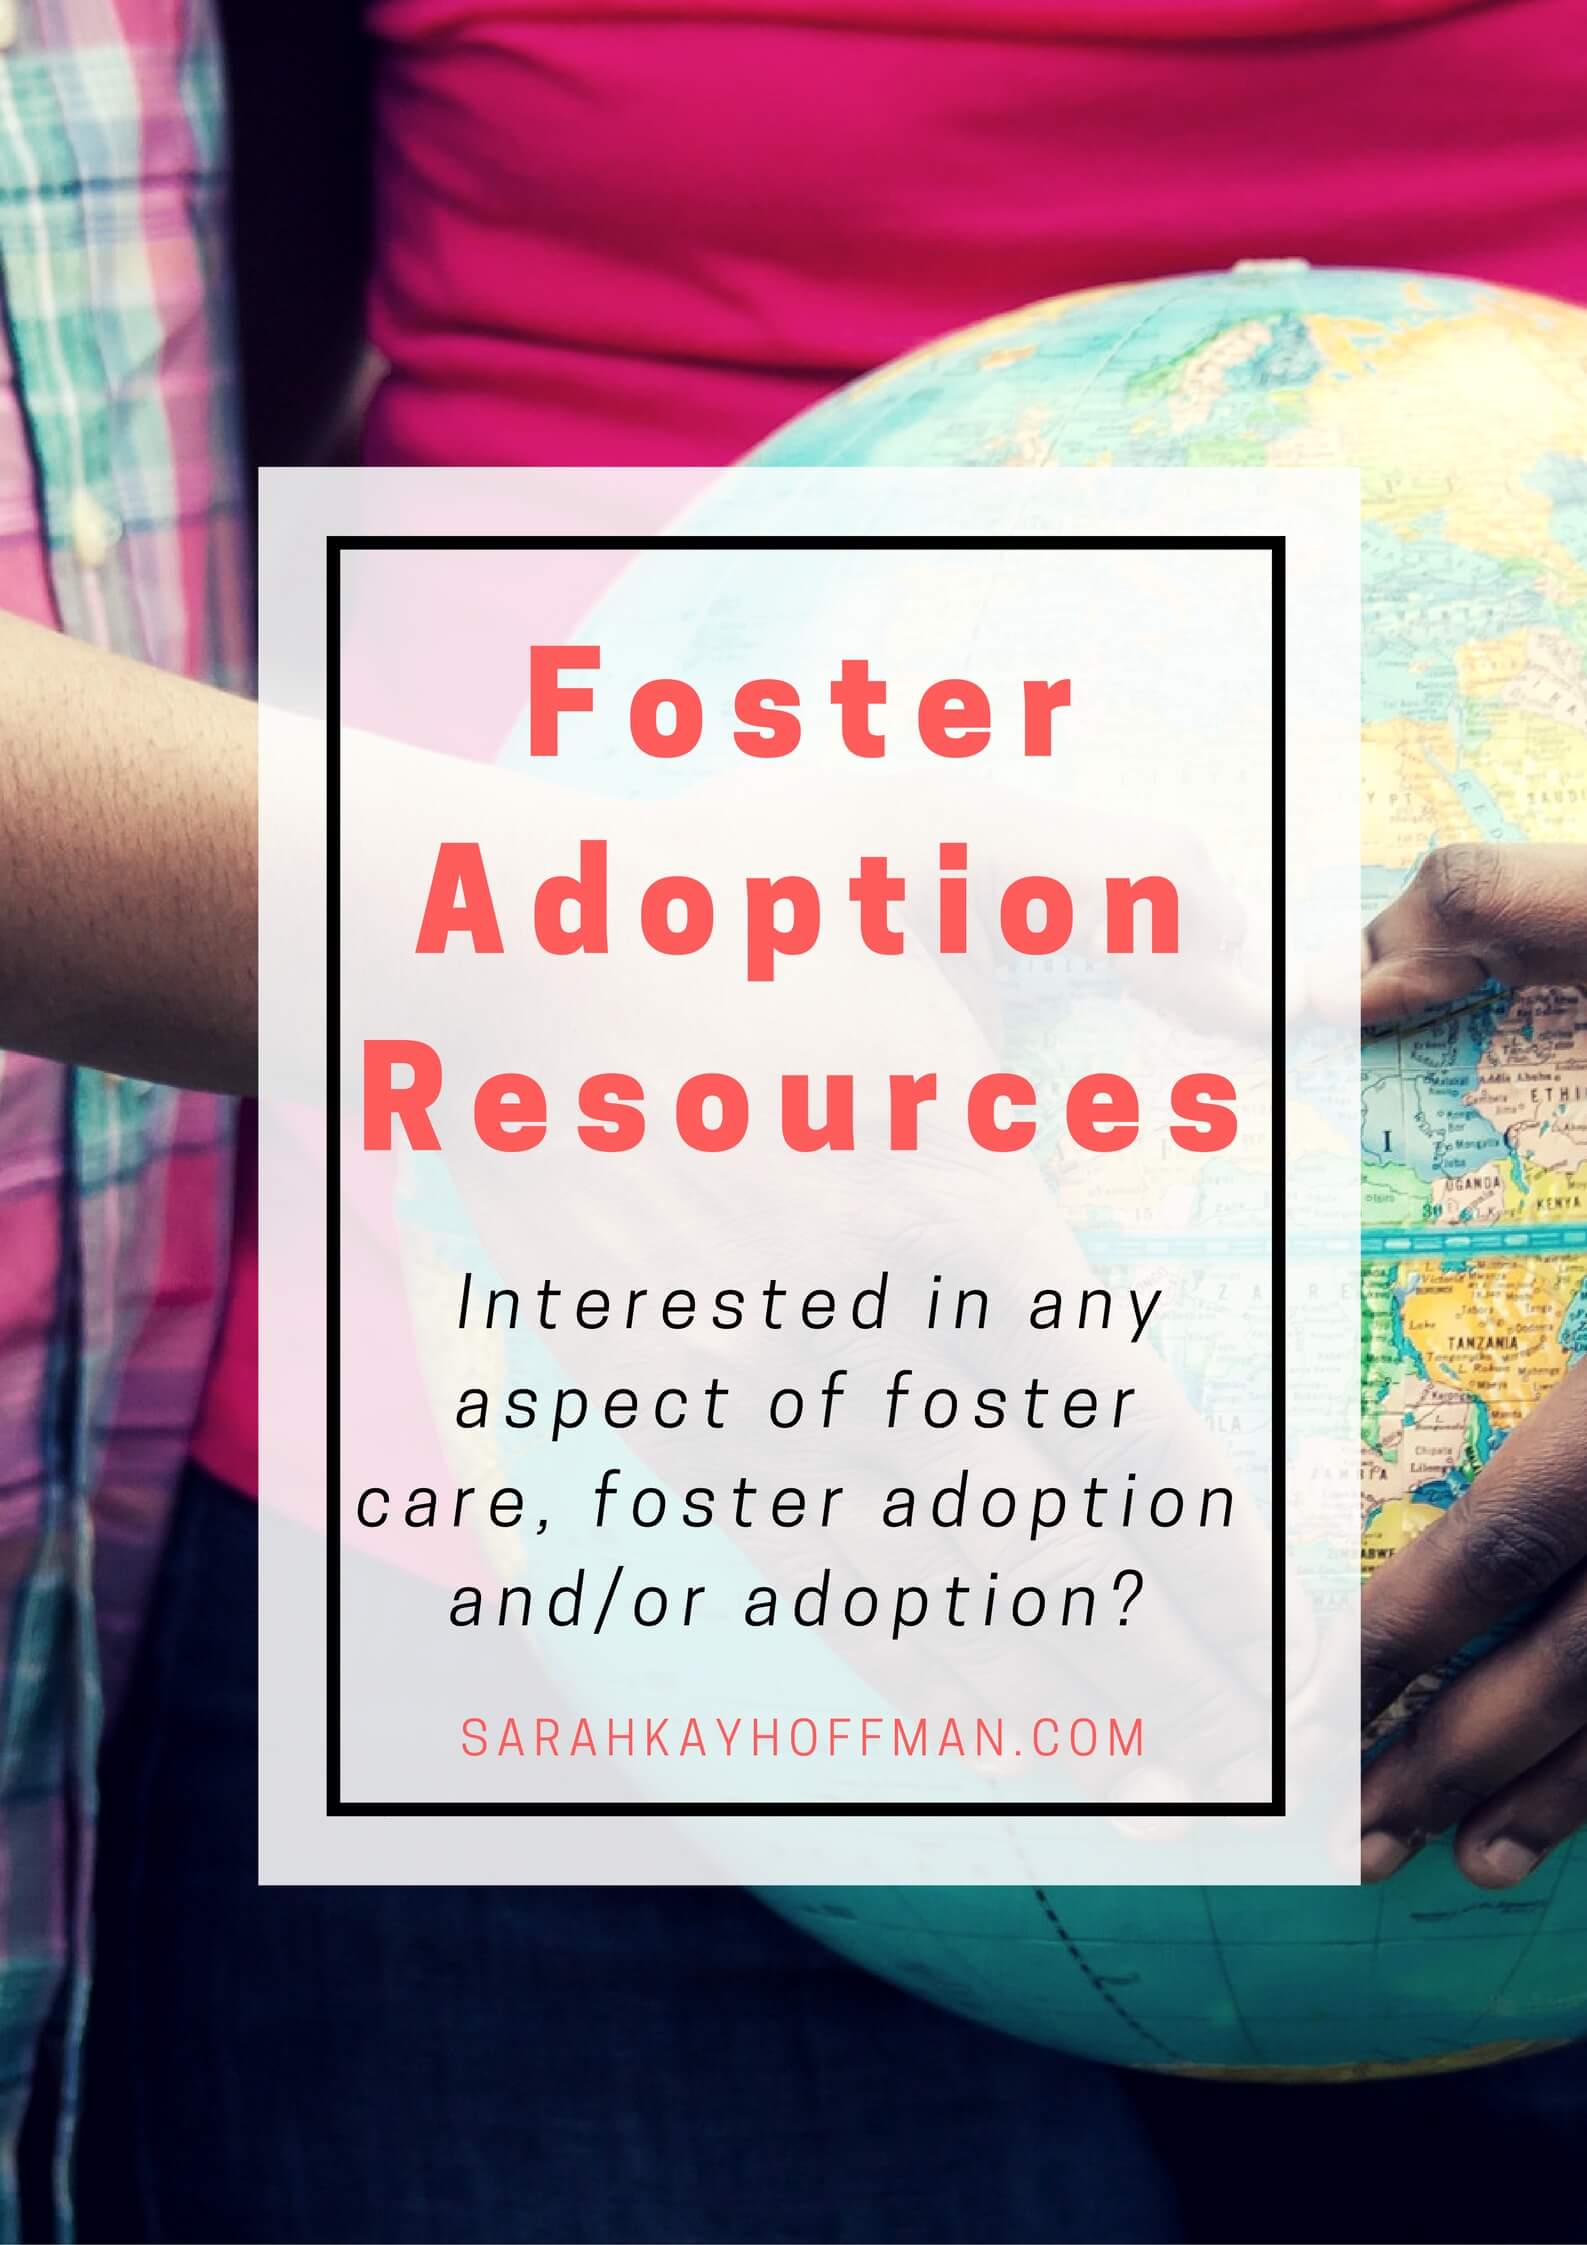 Foster Adoption Resources via sarahkayhoffman.com